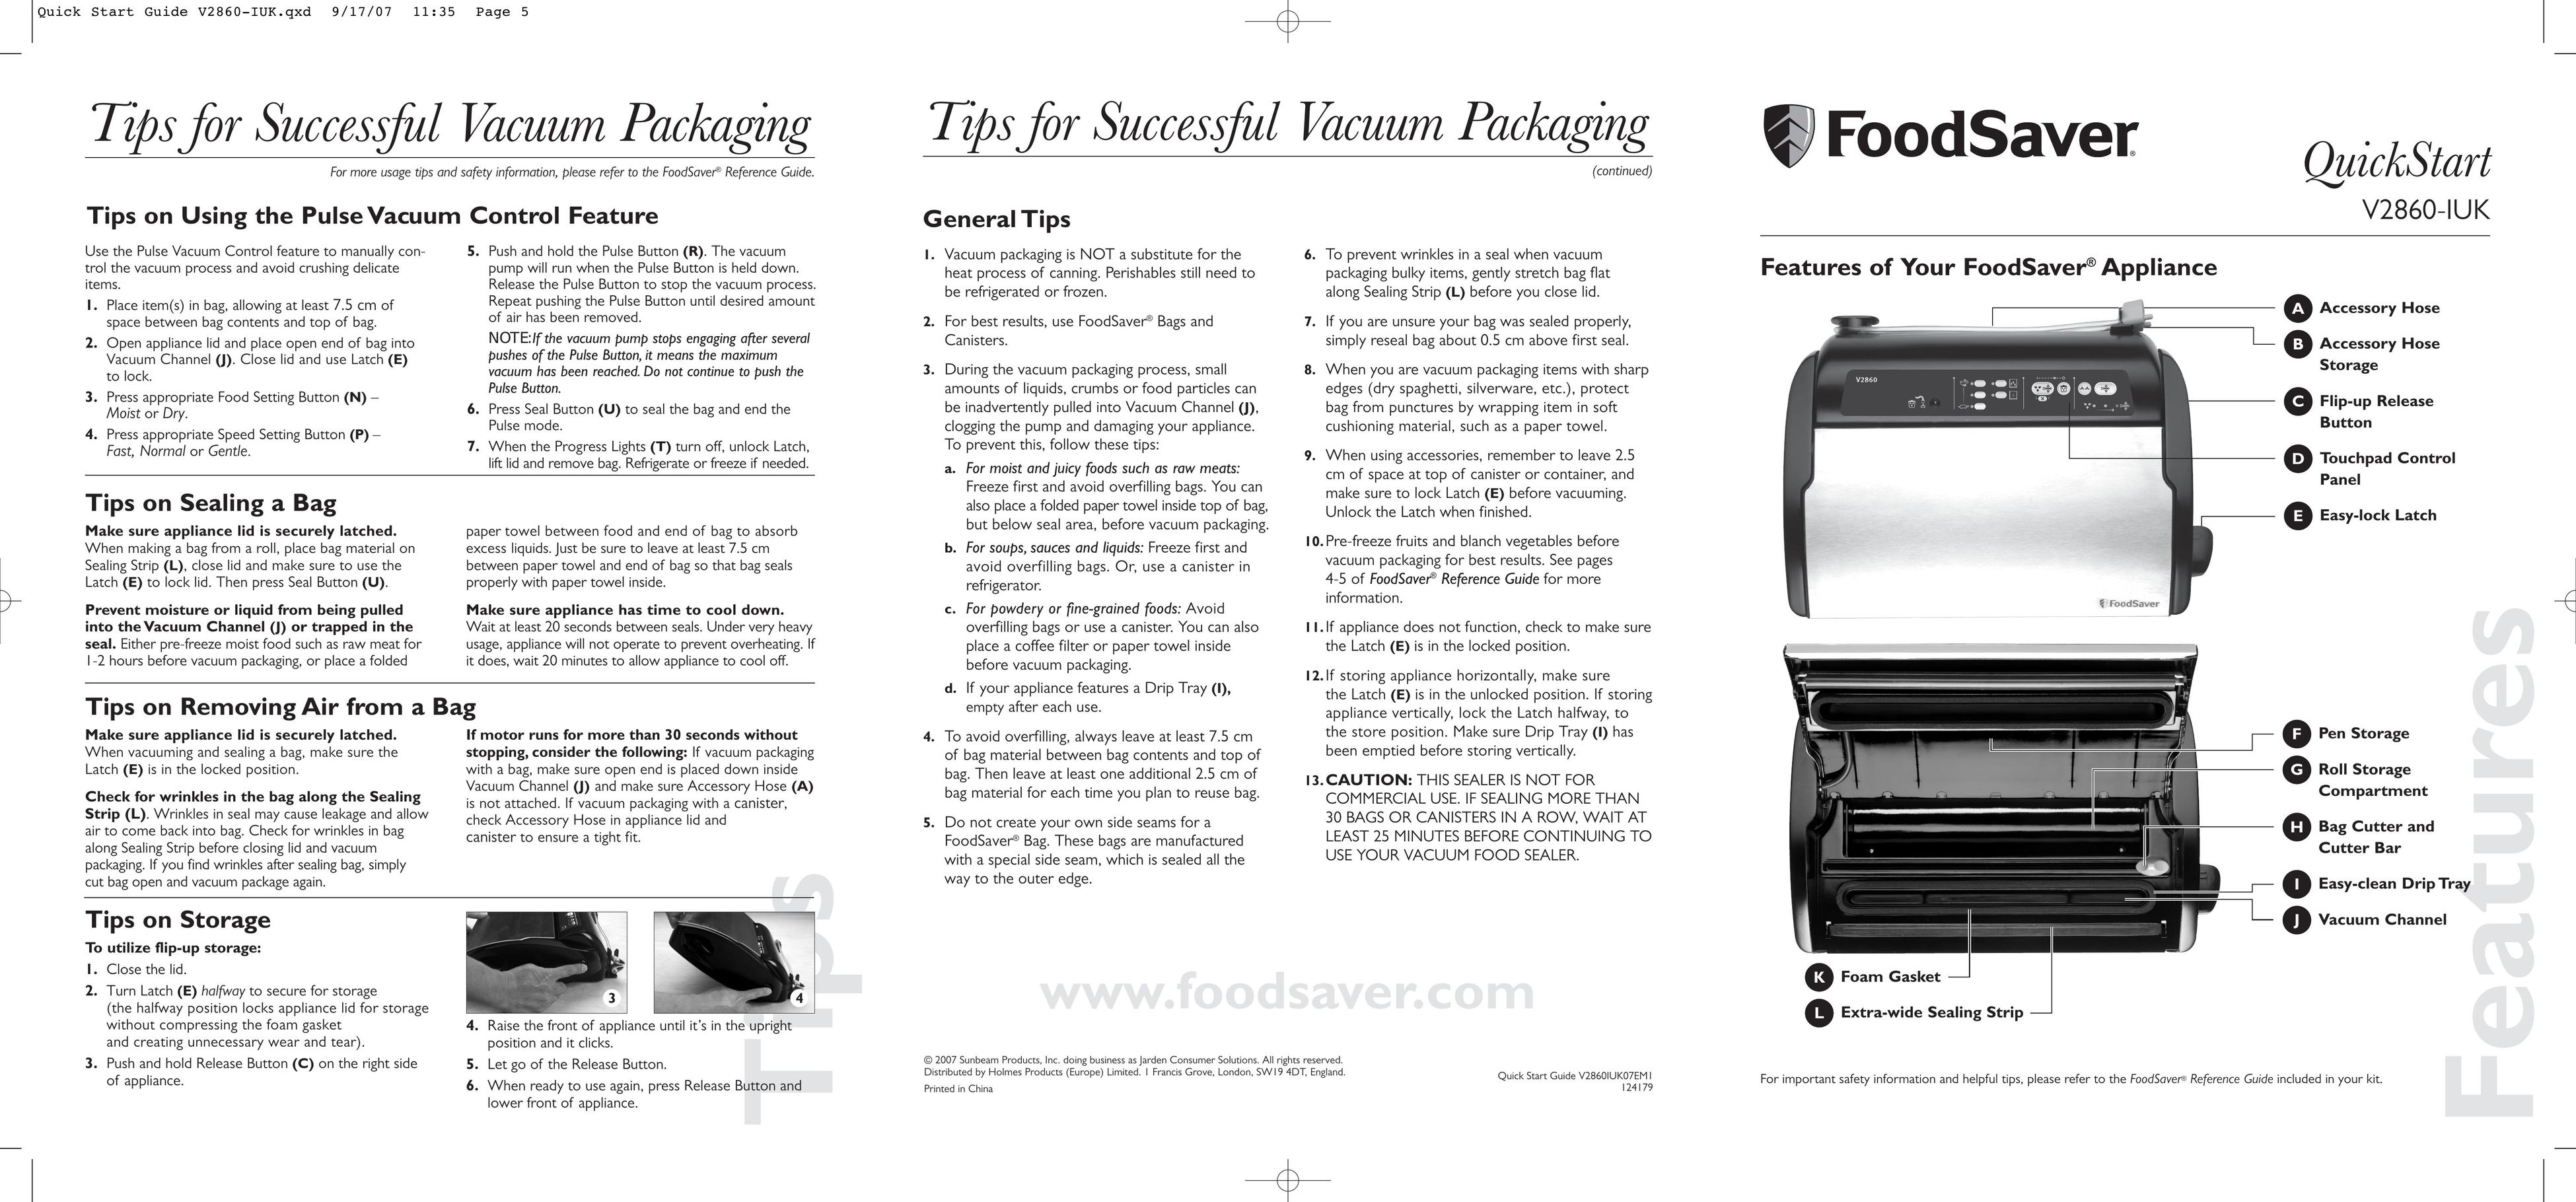 FoodSaver V2860-IUK Food Saver User Manual